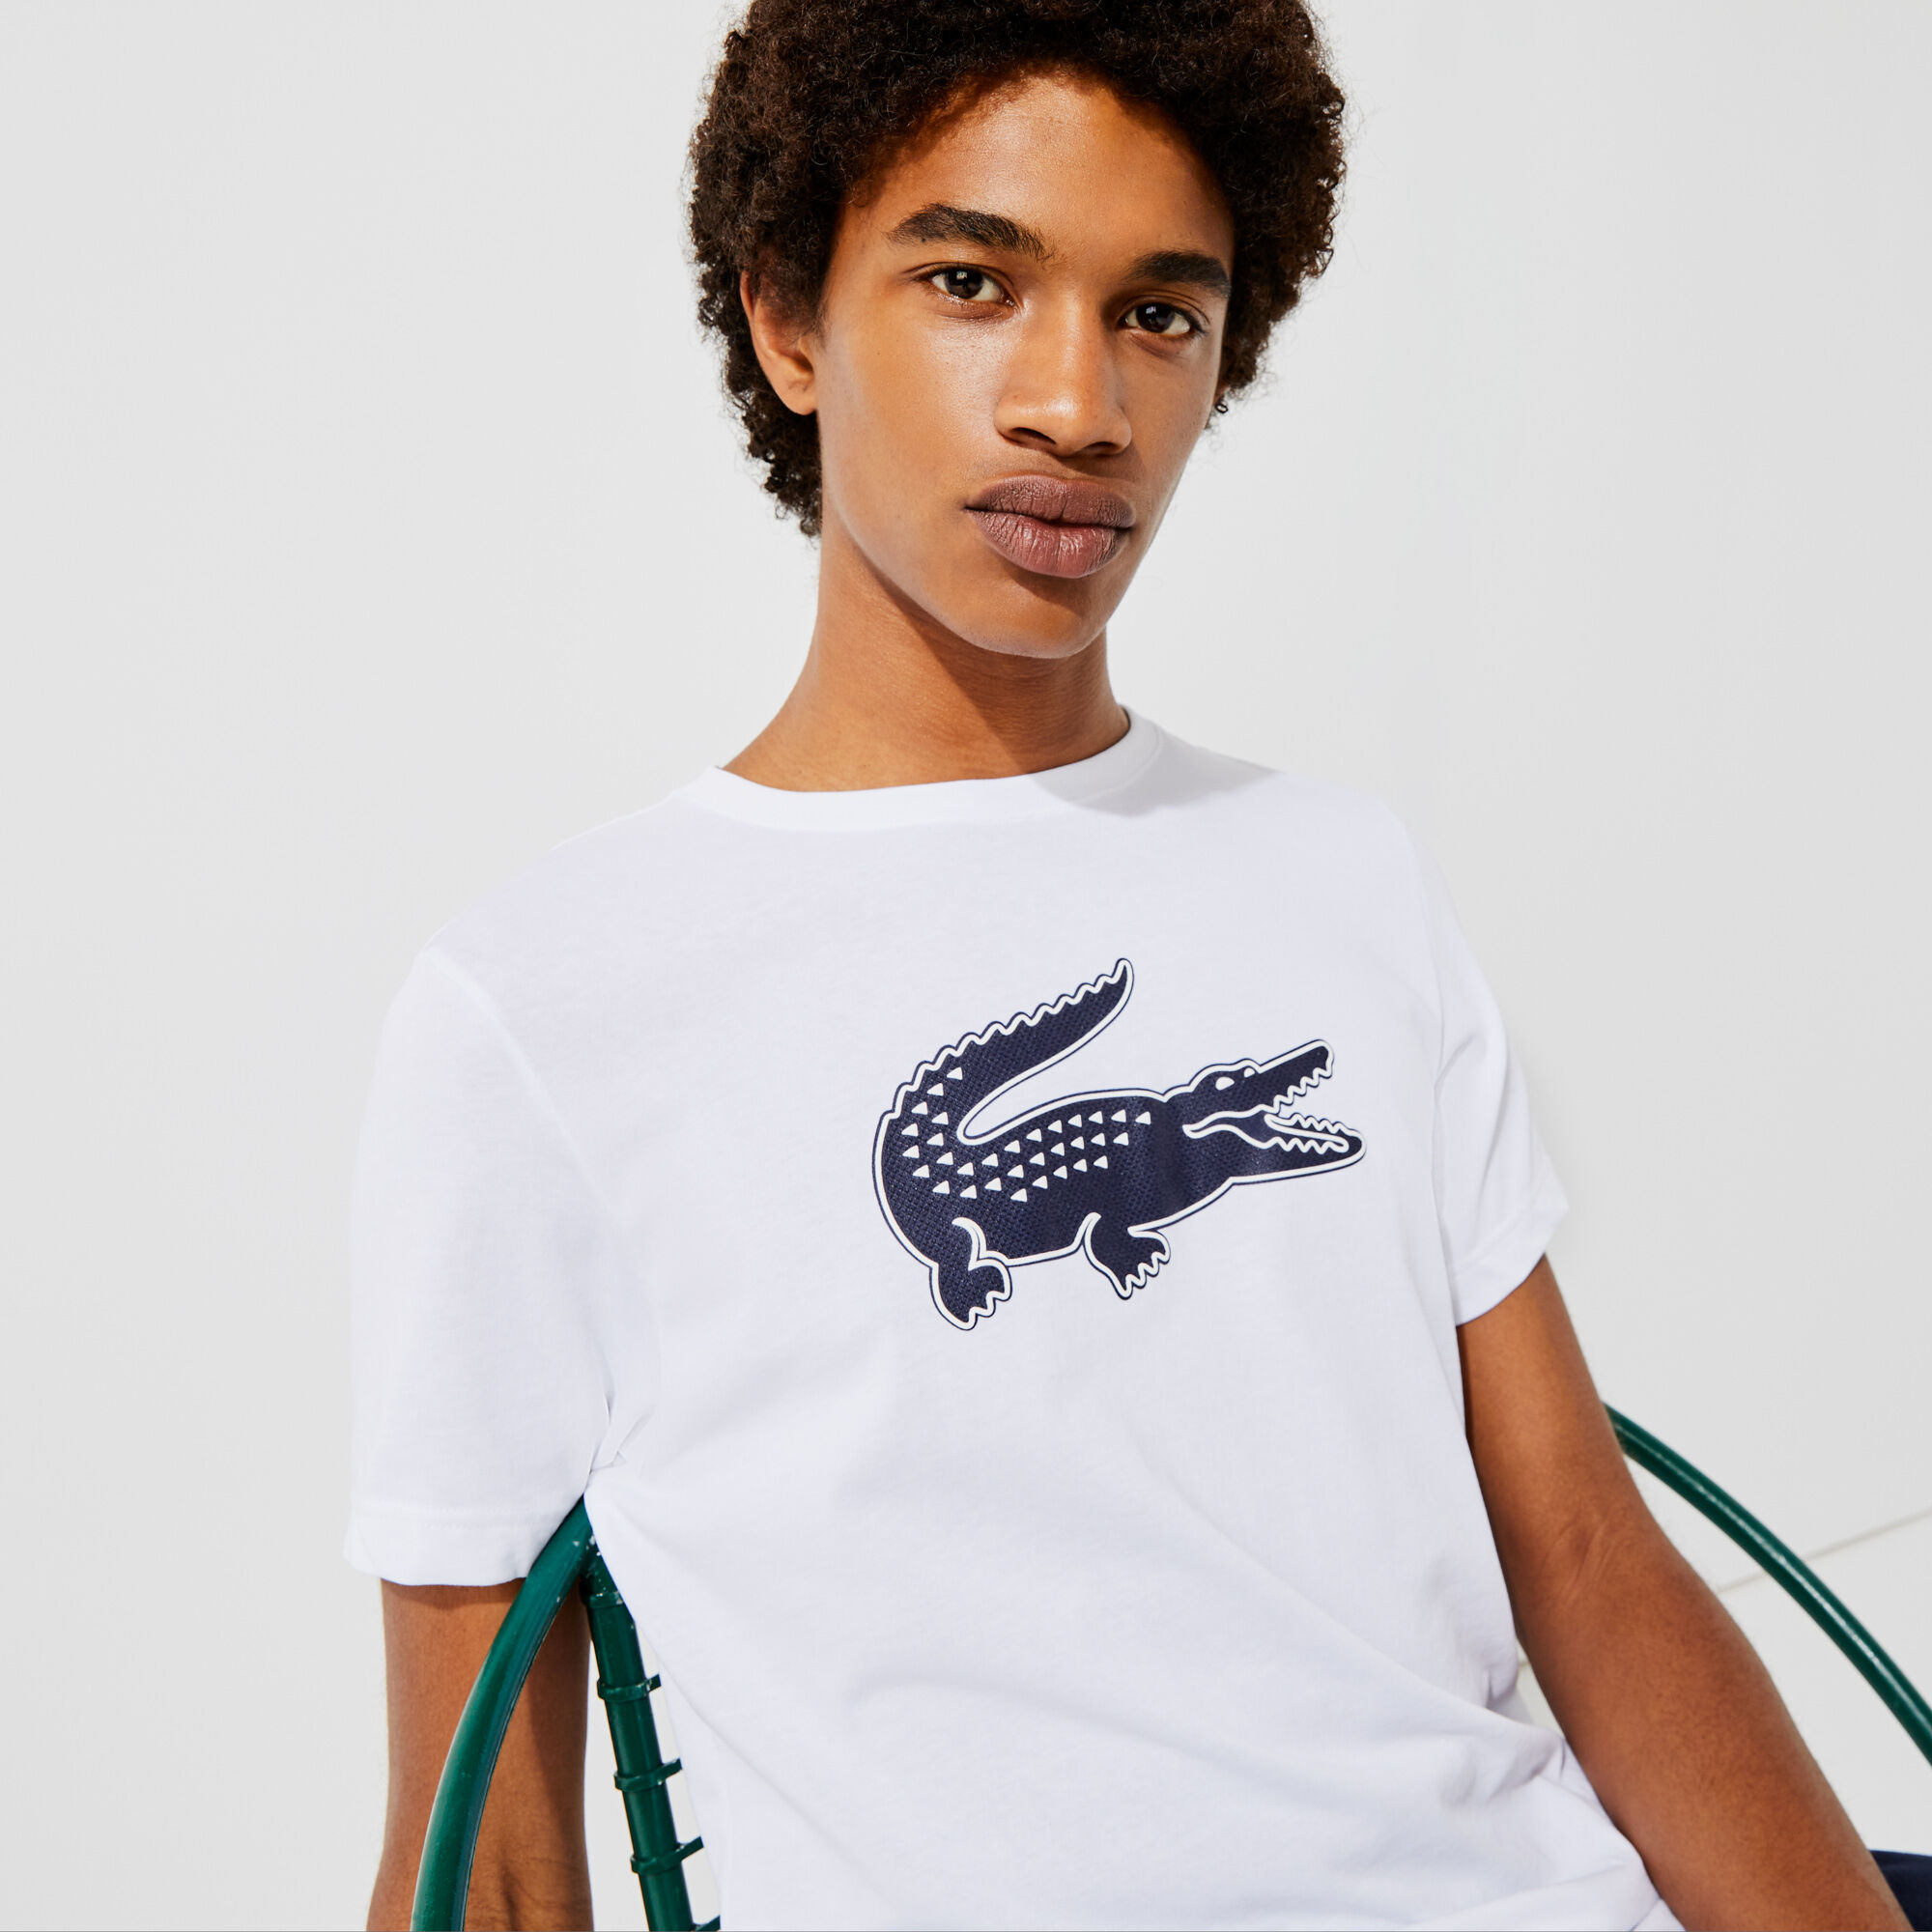 Men's Lacoste SPORT 3D Print Crocodile Breathable Jersey T-shirt